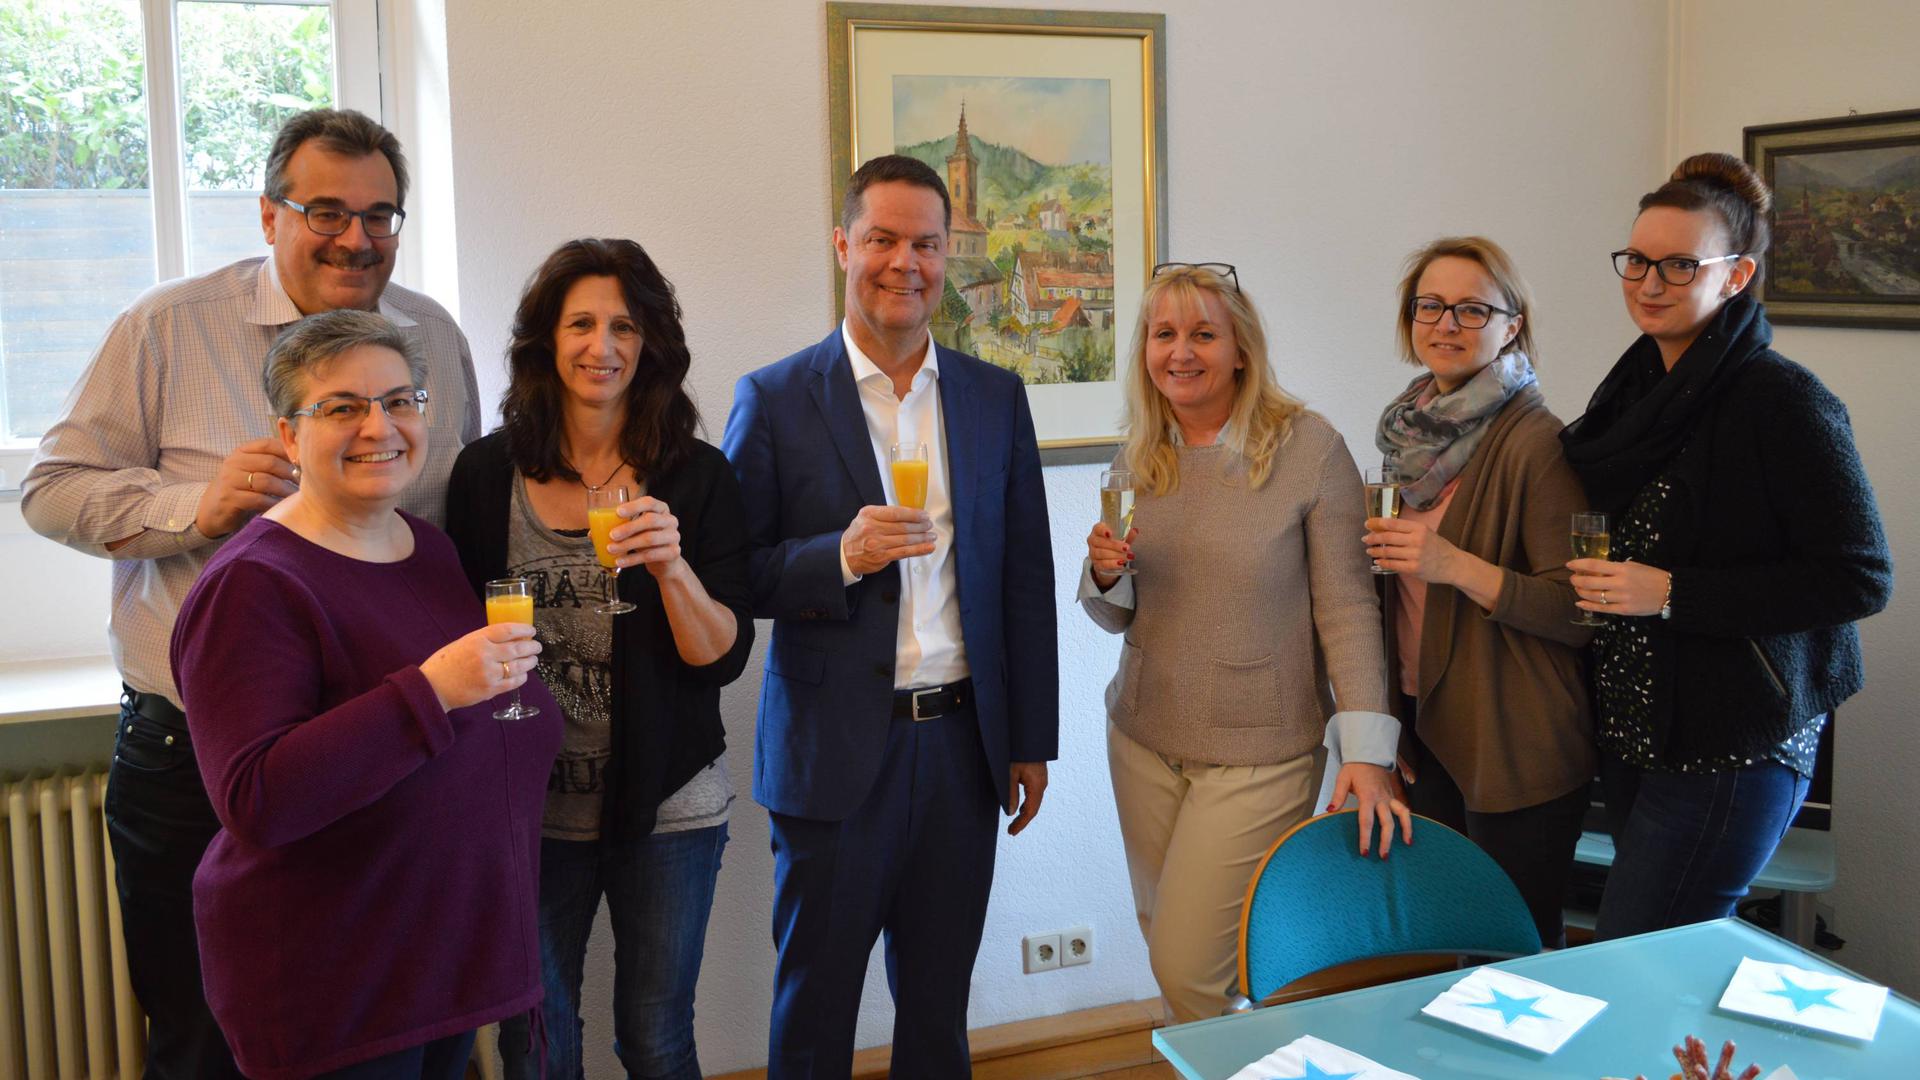 Ein Grund zum Feiern: Toni Huber wurde im März 2019 zum neuen Landrat des Landkreises Rastatt gewählt.